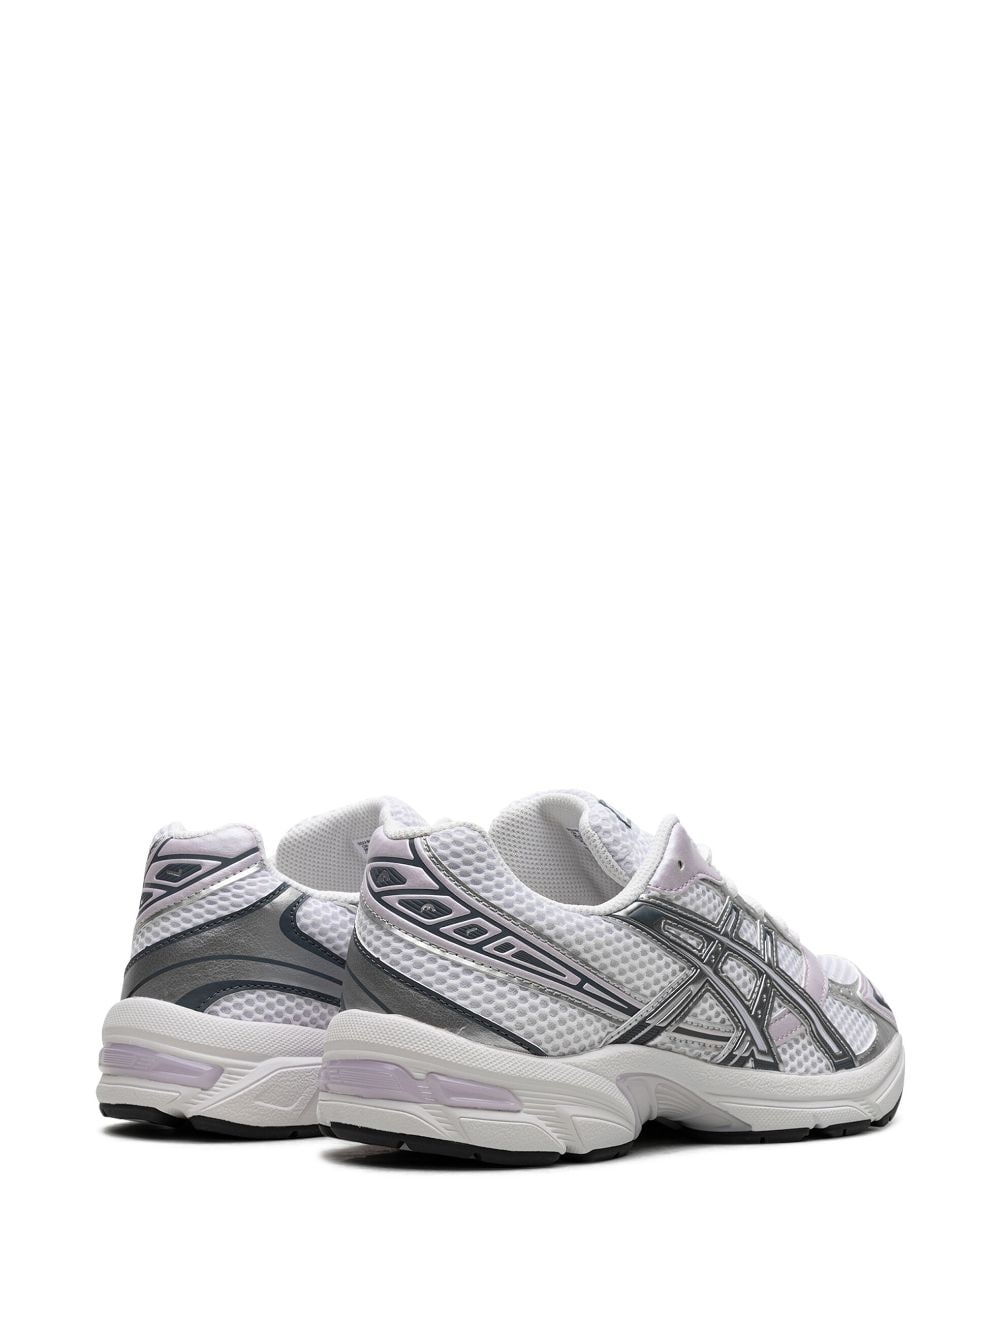 GEL-1130 "White/Faded Ash Rock" sneakers - 3